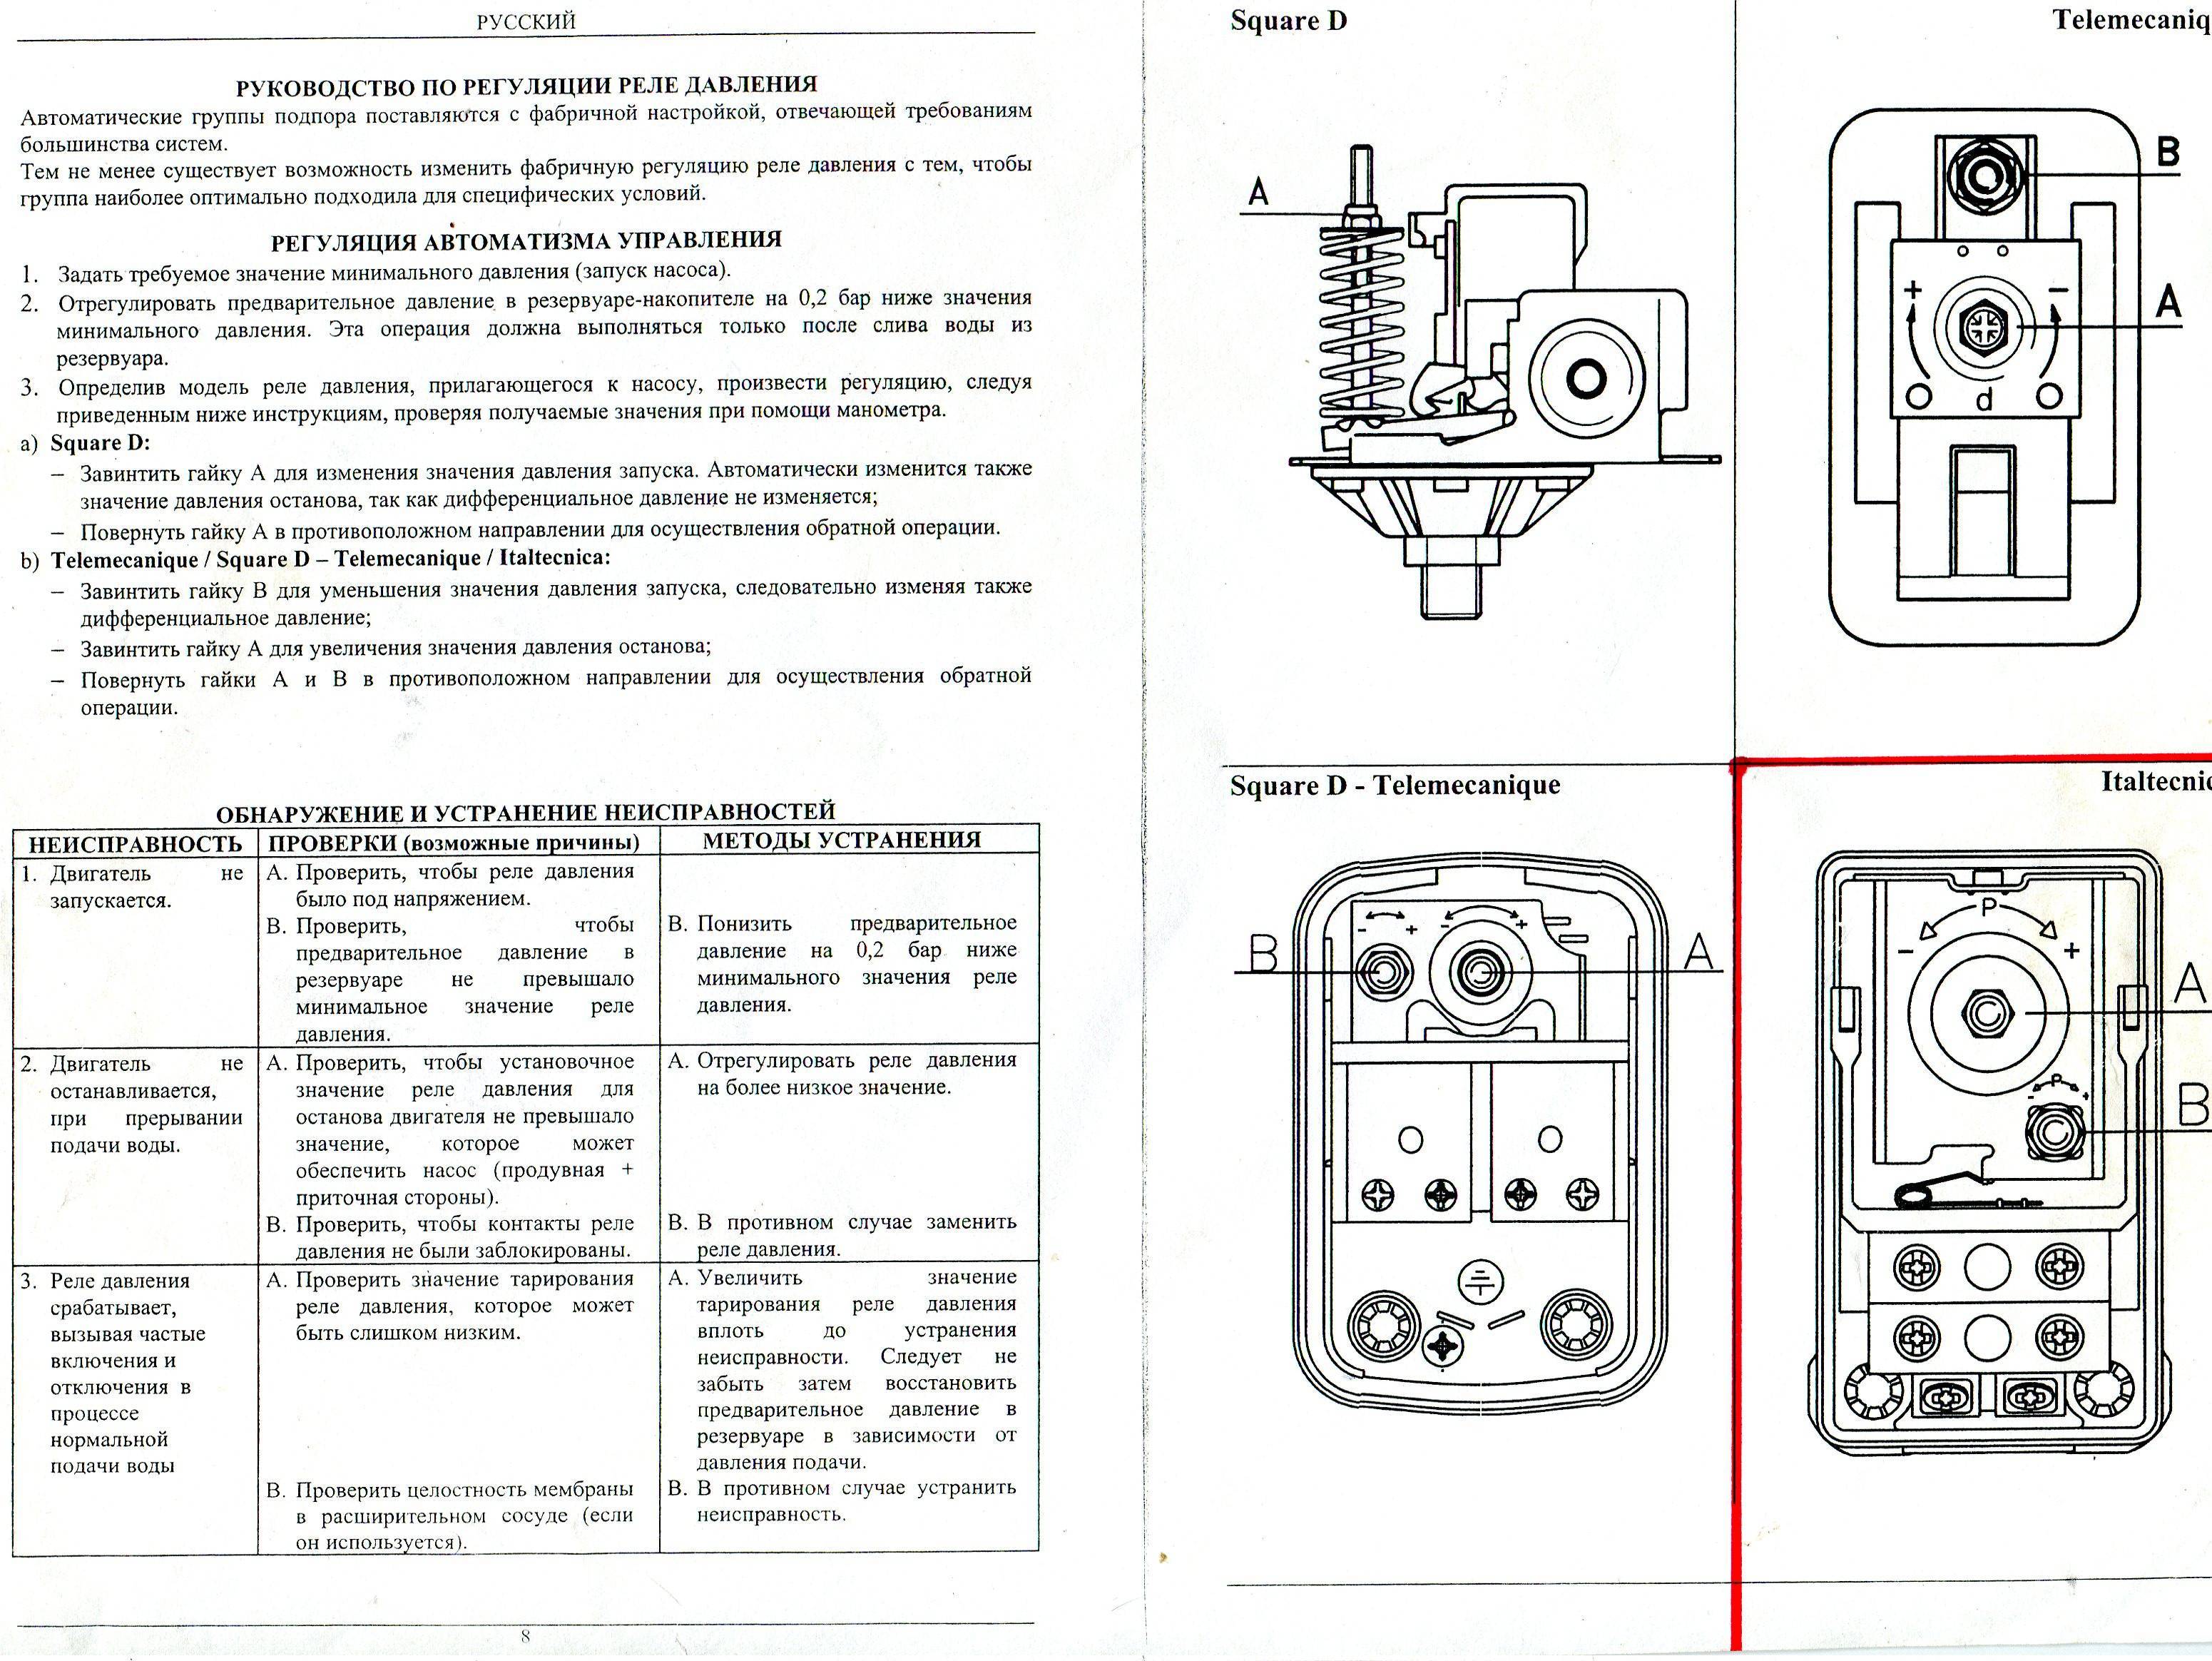 Реле давления рдм-5: регулировка, инструкция и схема подключения, принцип работы реле для насосной станции, фото и видео обзор